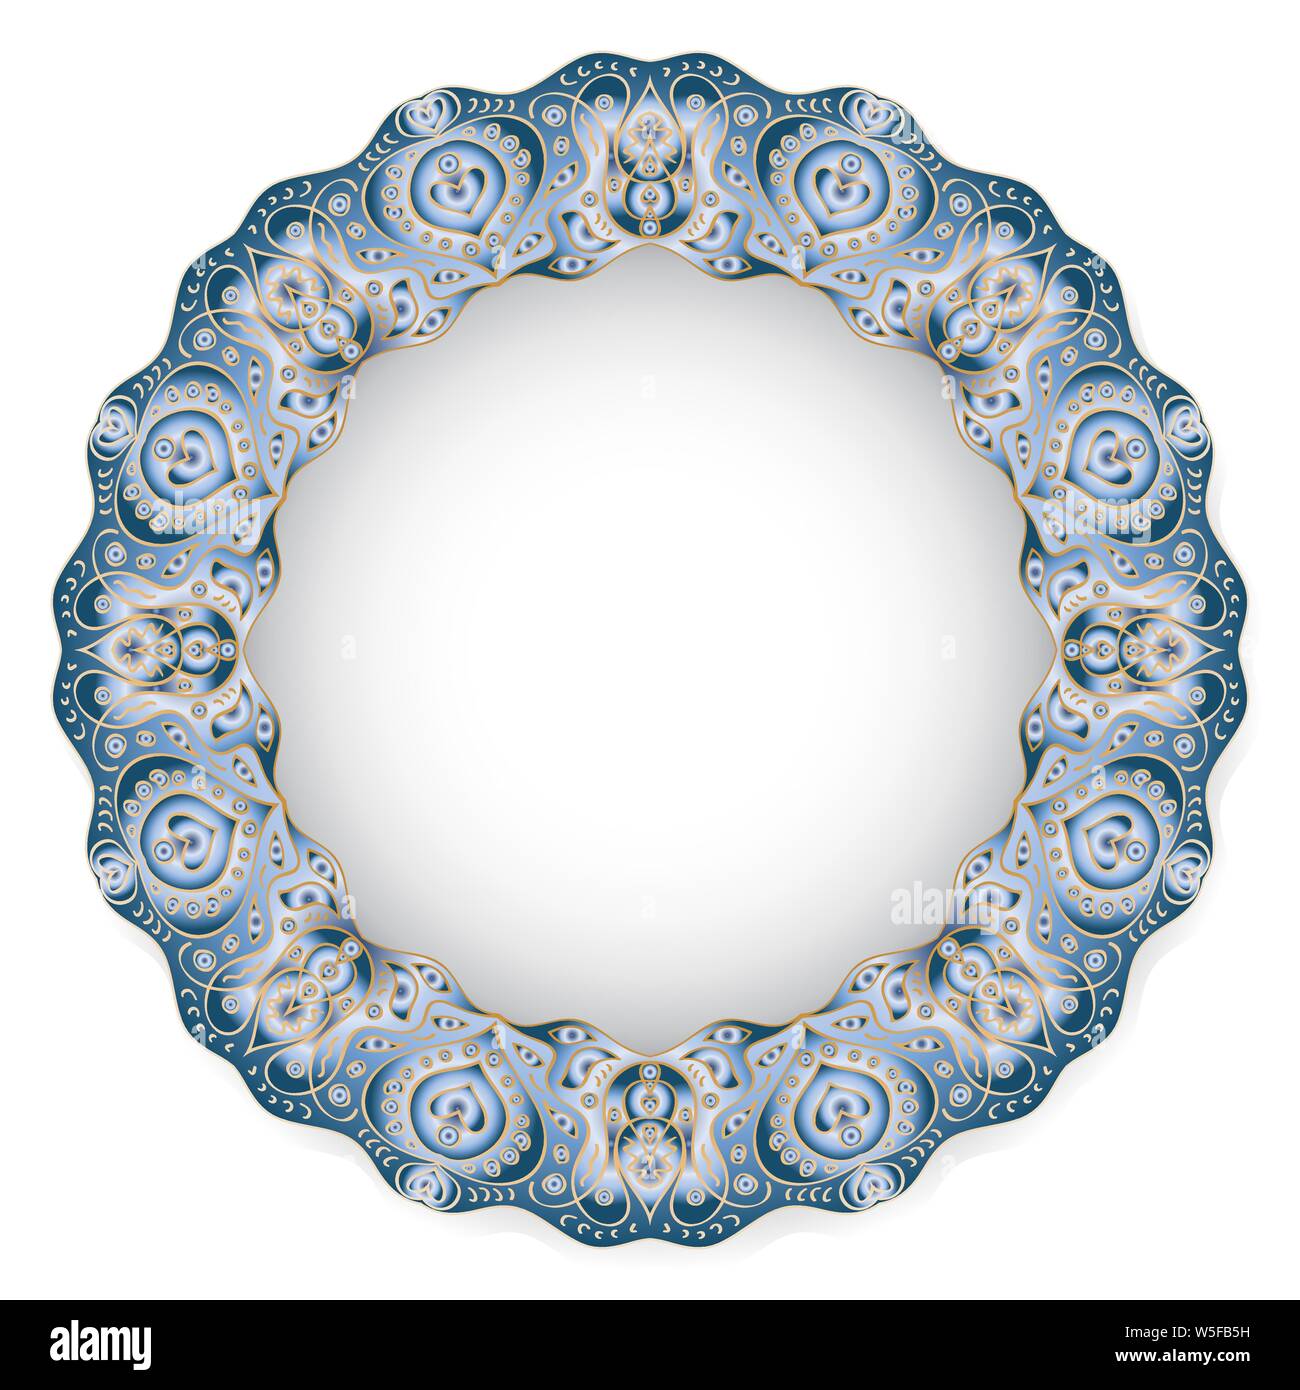 Motif à fleurs bleu circulaire avec l'espace vide dans le centre. Plaque en porcelaine blanche avec un motif stylisé en style ethnique. Vector illustration. Illustration de Vecteur